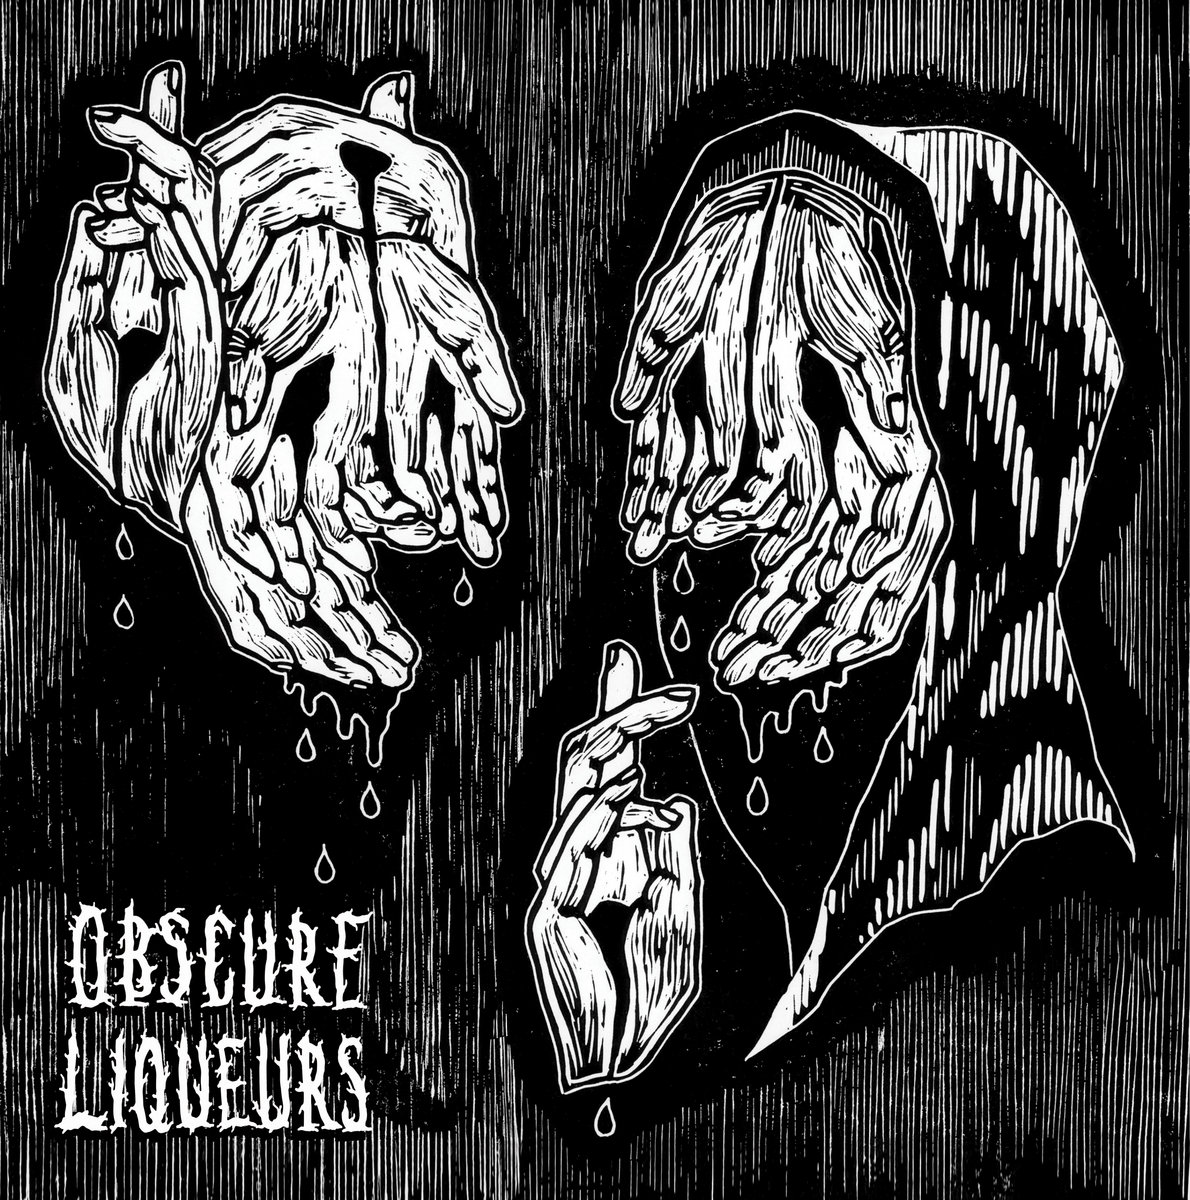 Obscure_liqueurs_jam_baxter